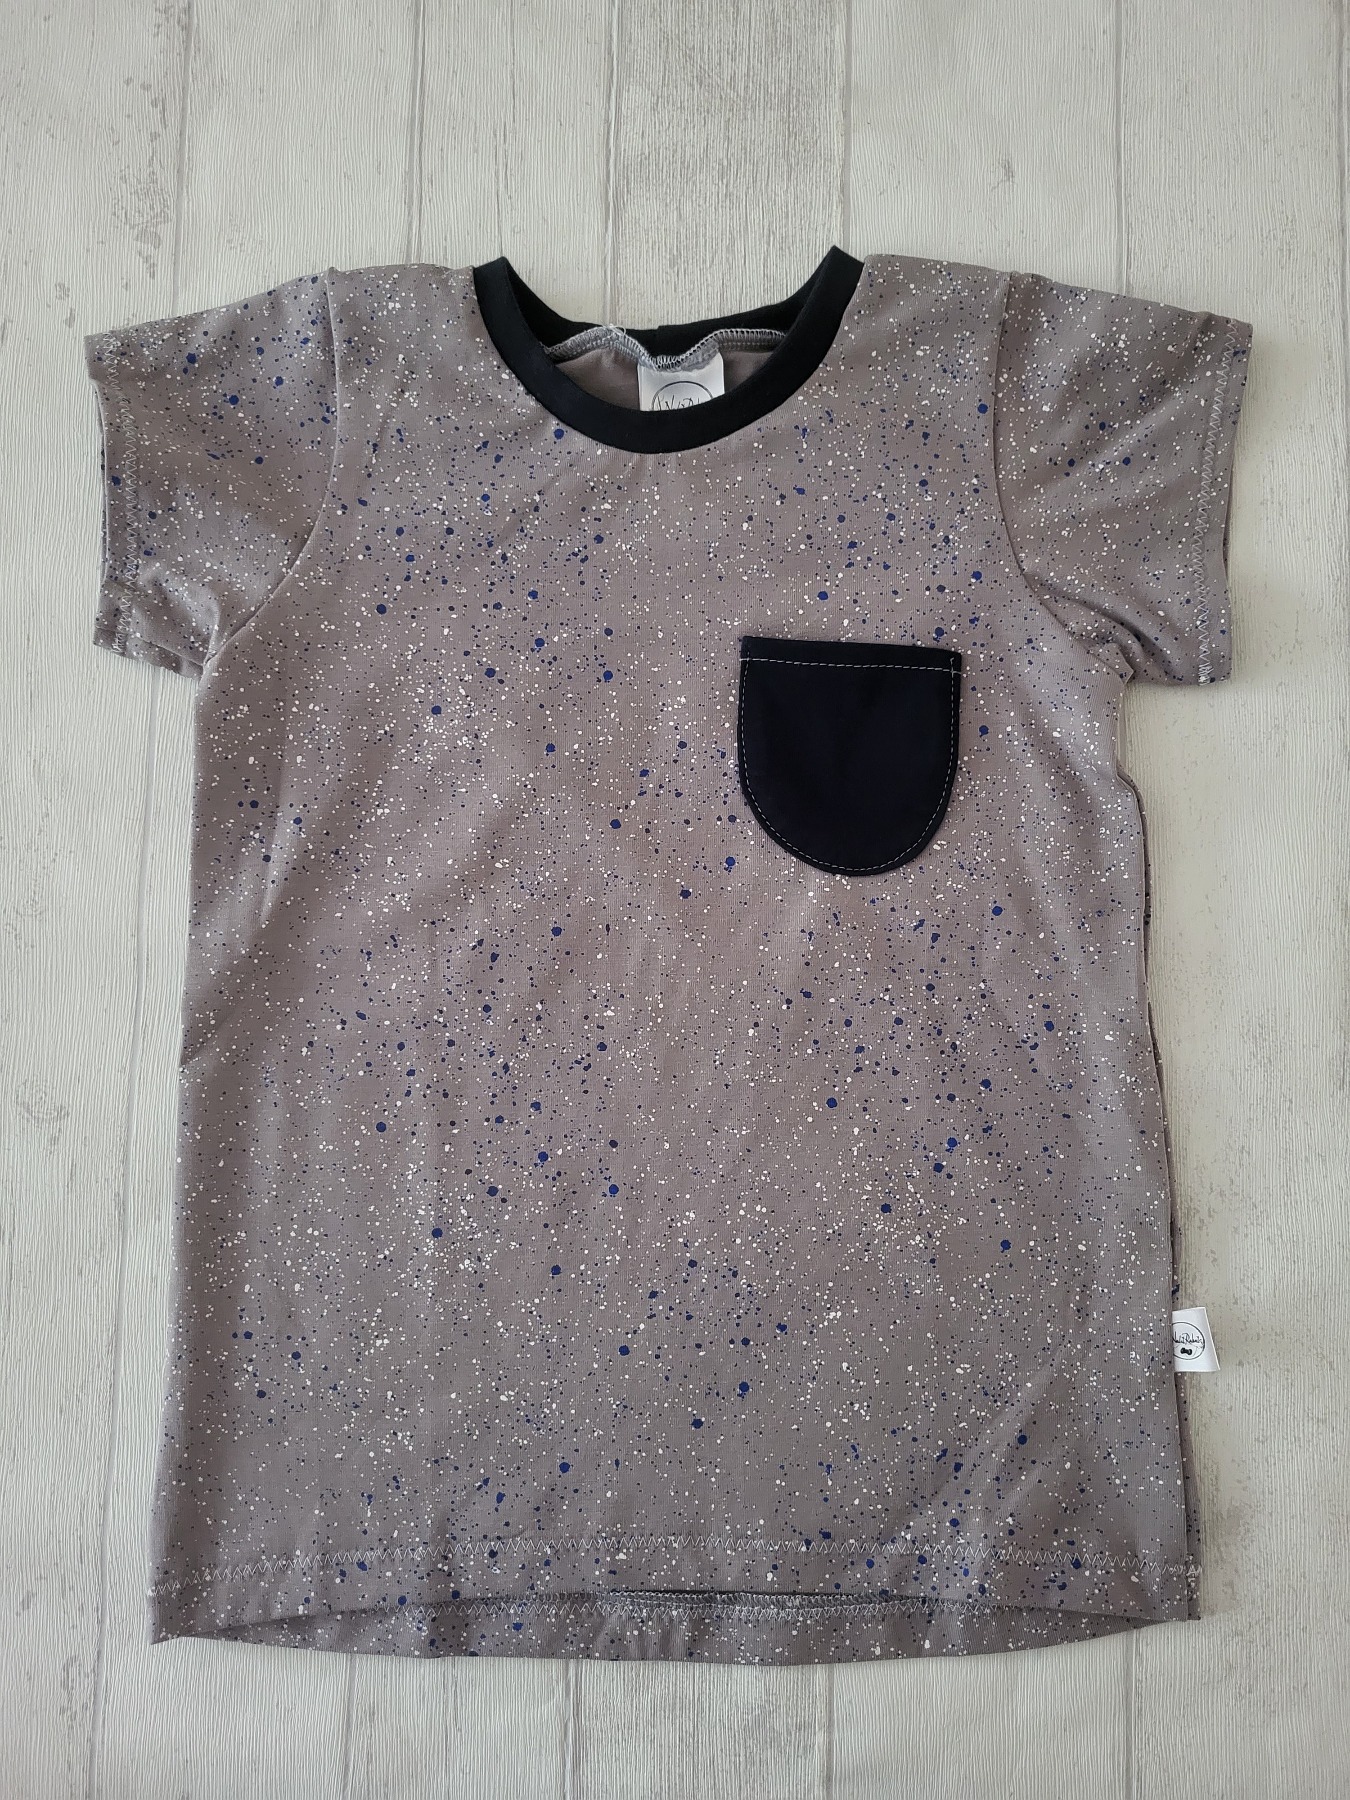 Sofortkauf Handmade T-Shirt kurzarm Sprenkel grau Gr. 128 von NahtRabatz